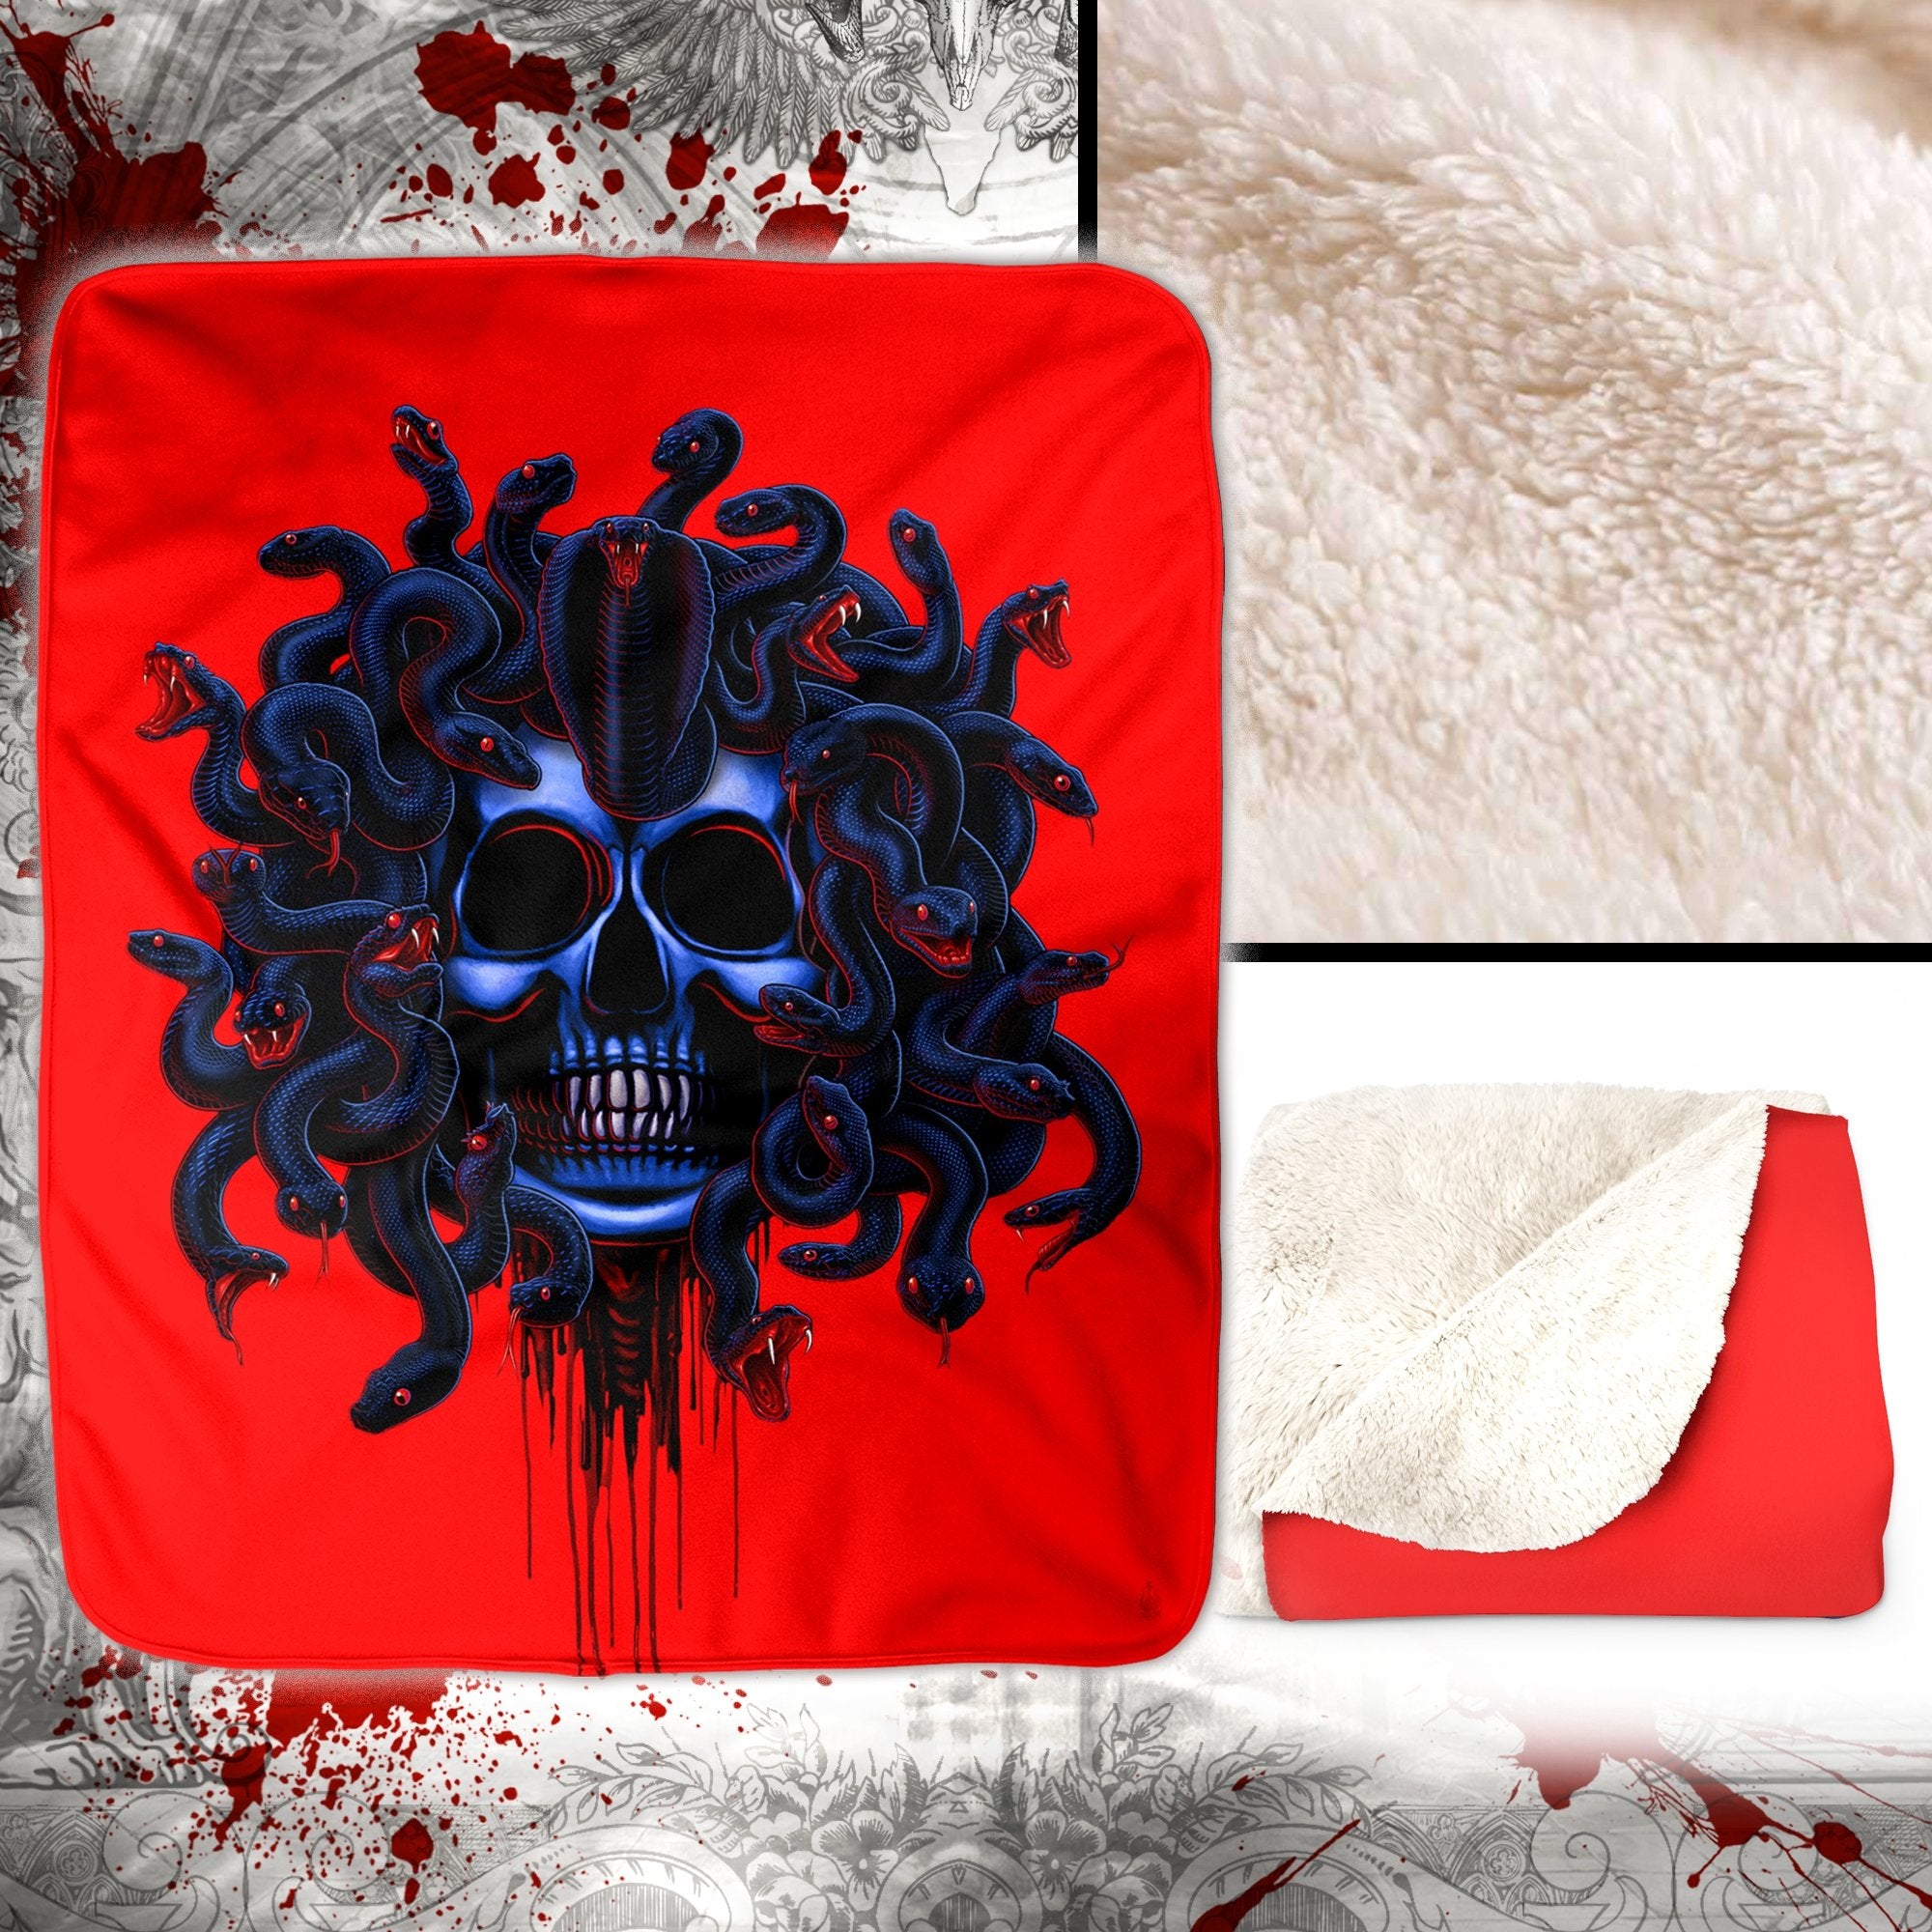 Skull Throw Fleece Blanket, Alternative Horror Decor, Alternative Art Gift - Medusa, Goth Neon - Abysm Internal